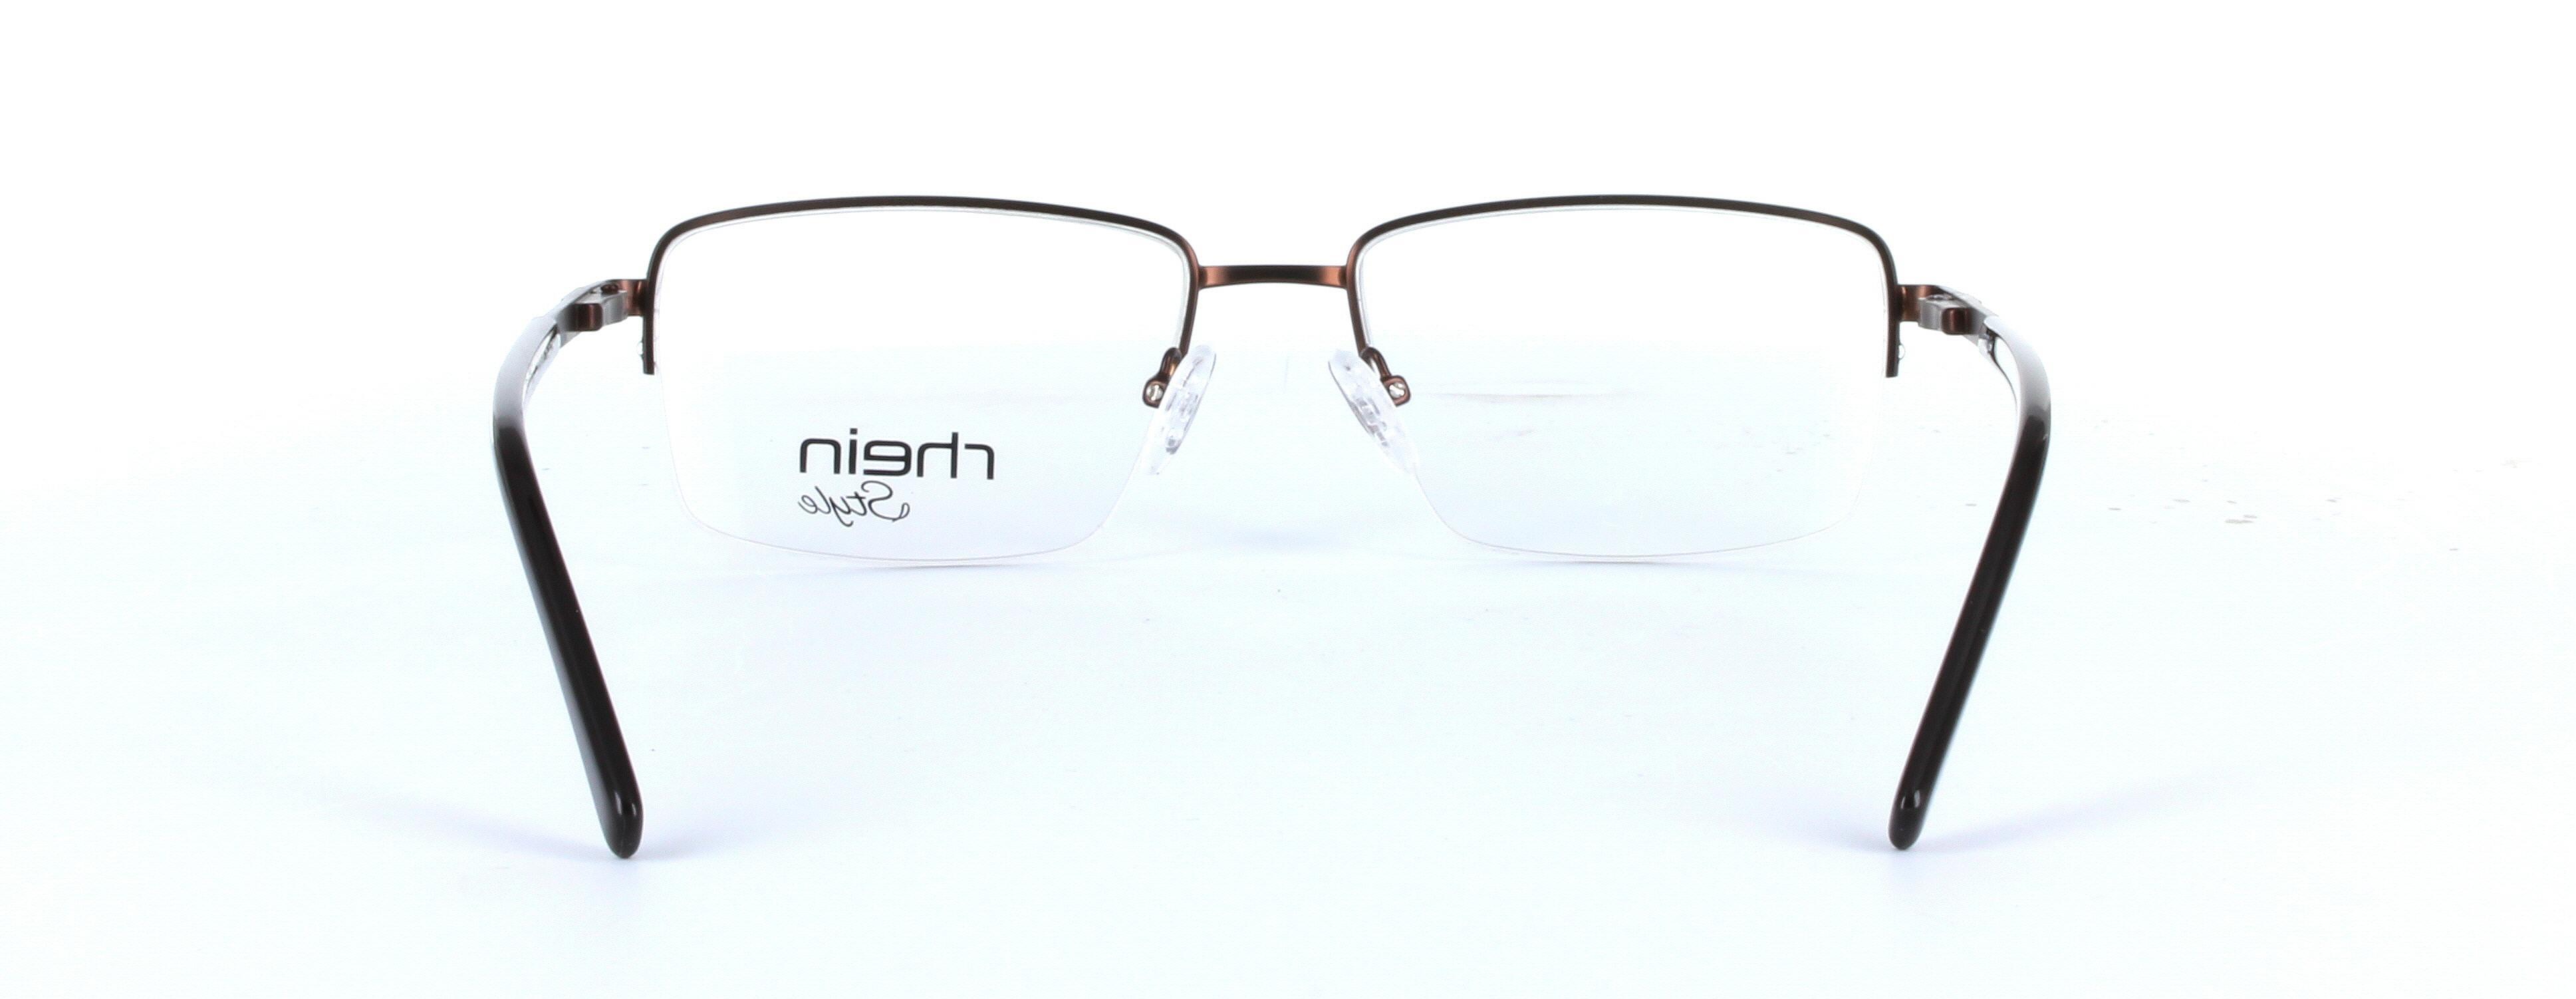 Denver Brown Semi Rimless Rectangular Metal Glasses - Image View 3